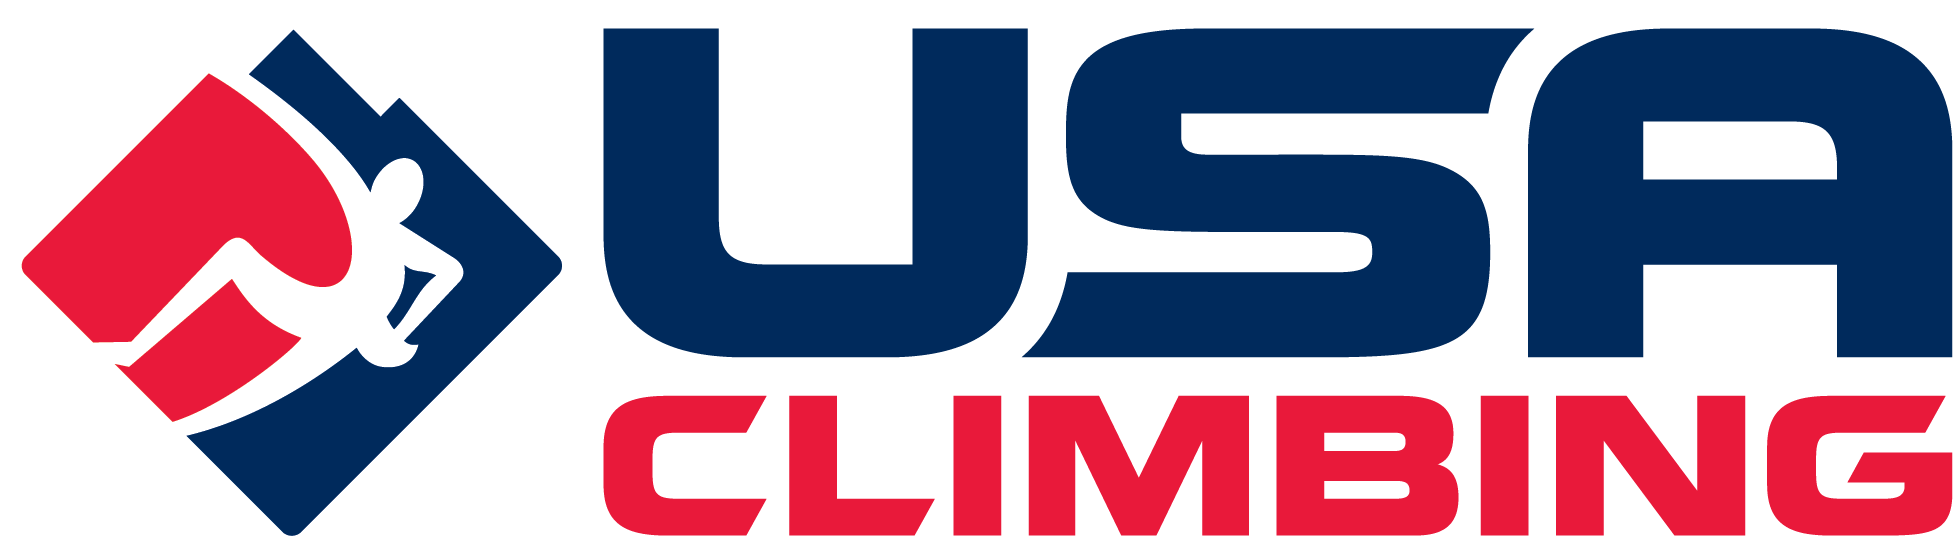 USA-Climbing-Logo-Horizontal.png